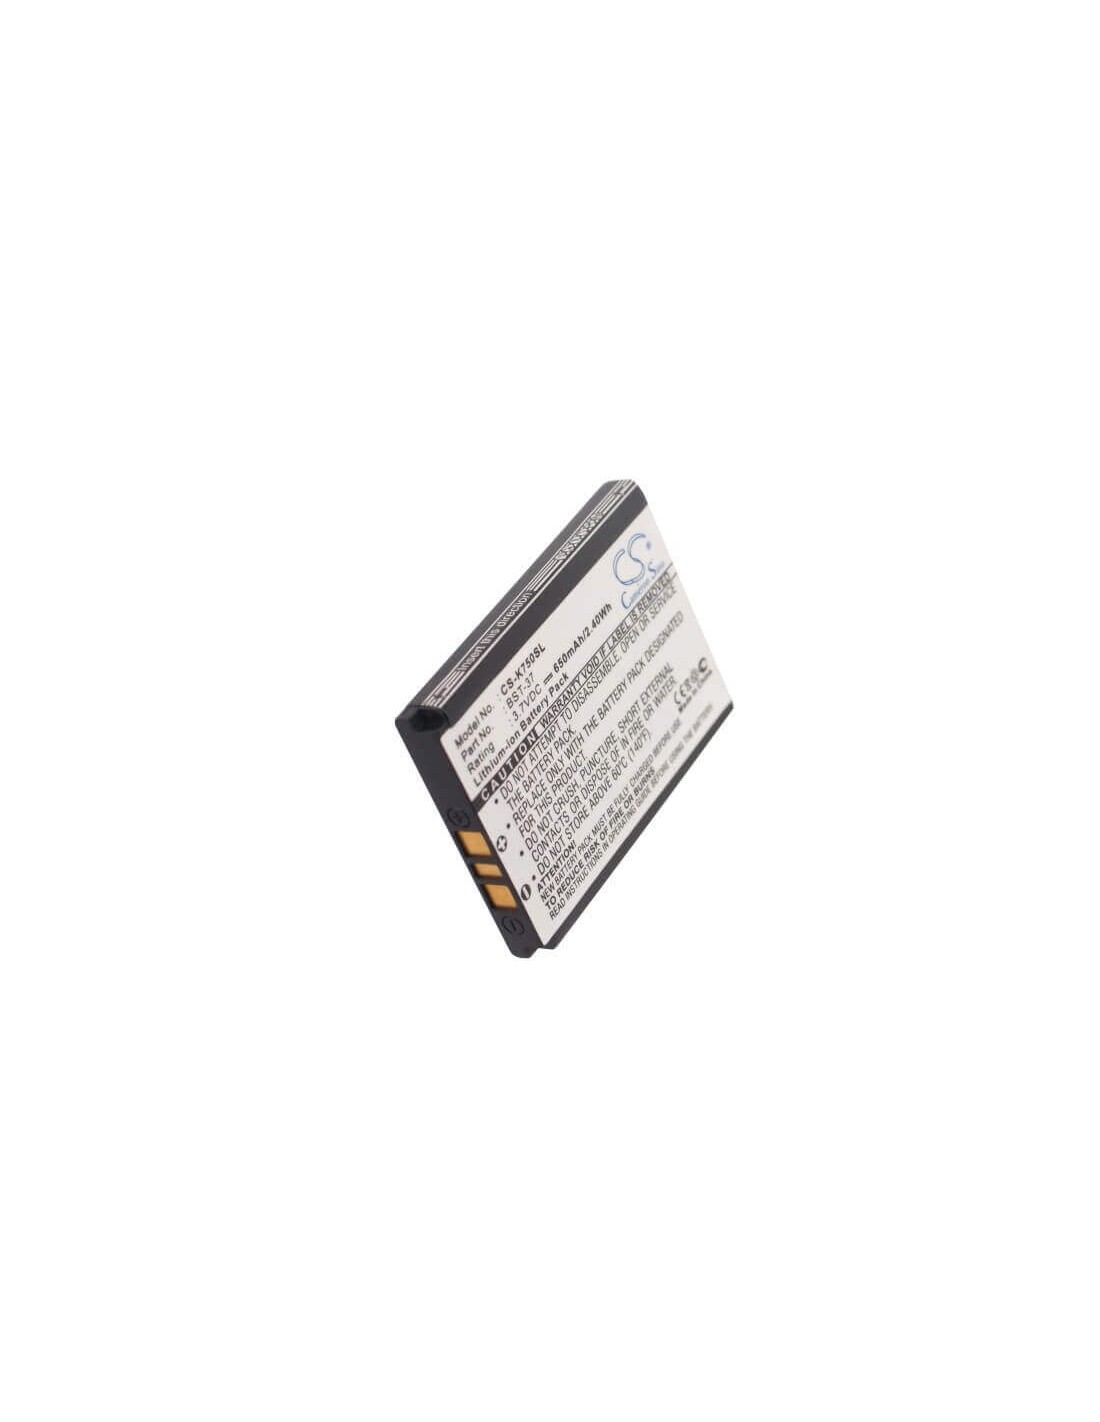 Battery for Sony Ericsson K750, D750, D750i 3.7V, 650mAh - 2.41Wh